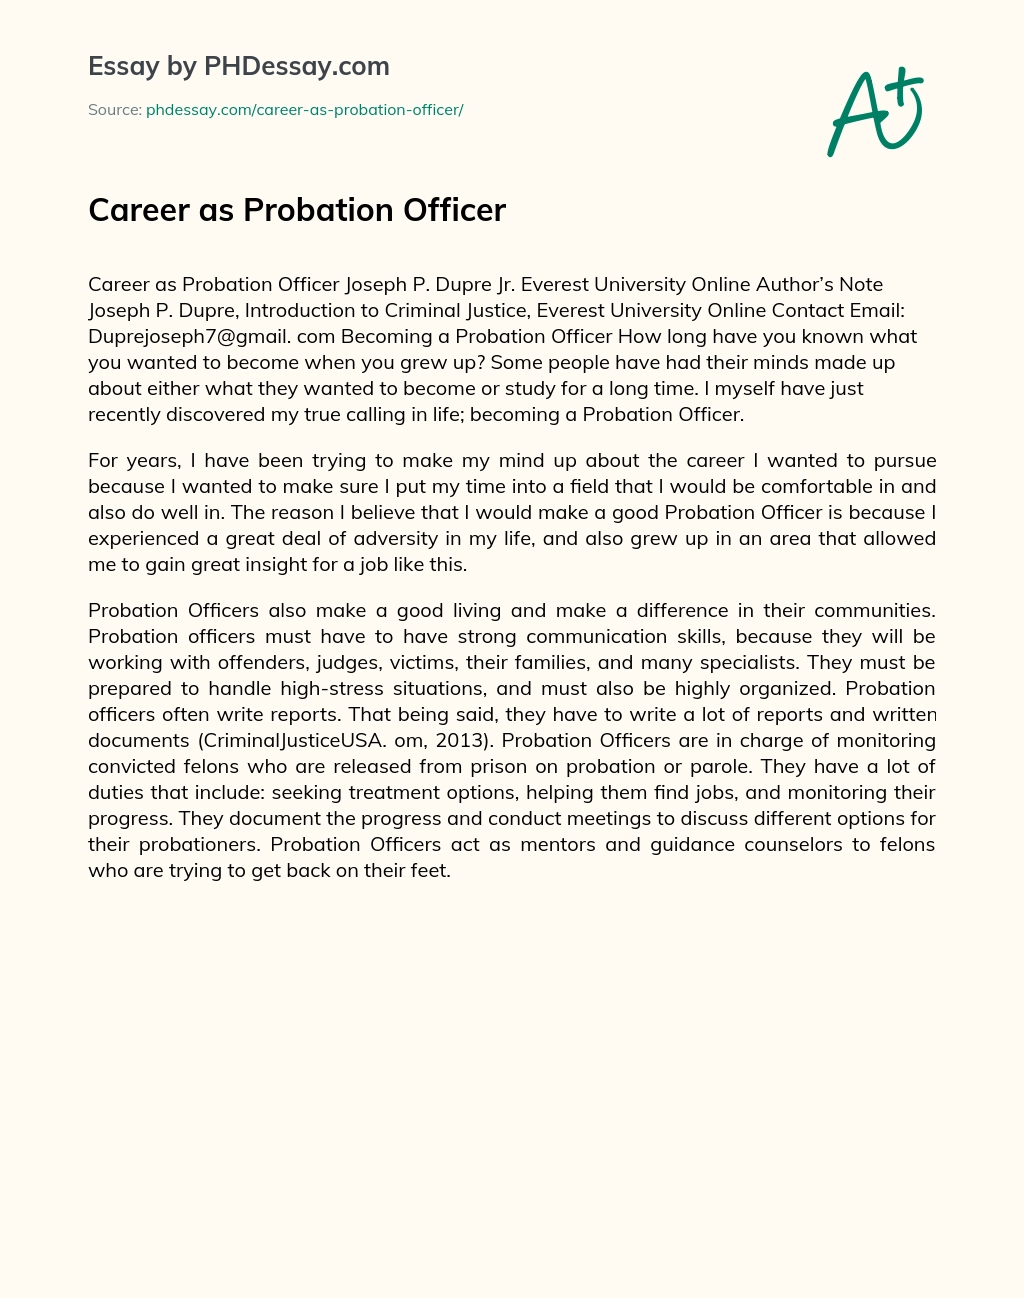 Career as Probation Officer essay